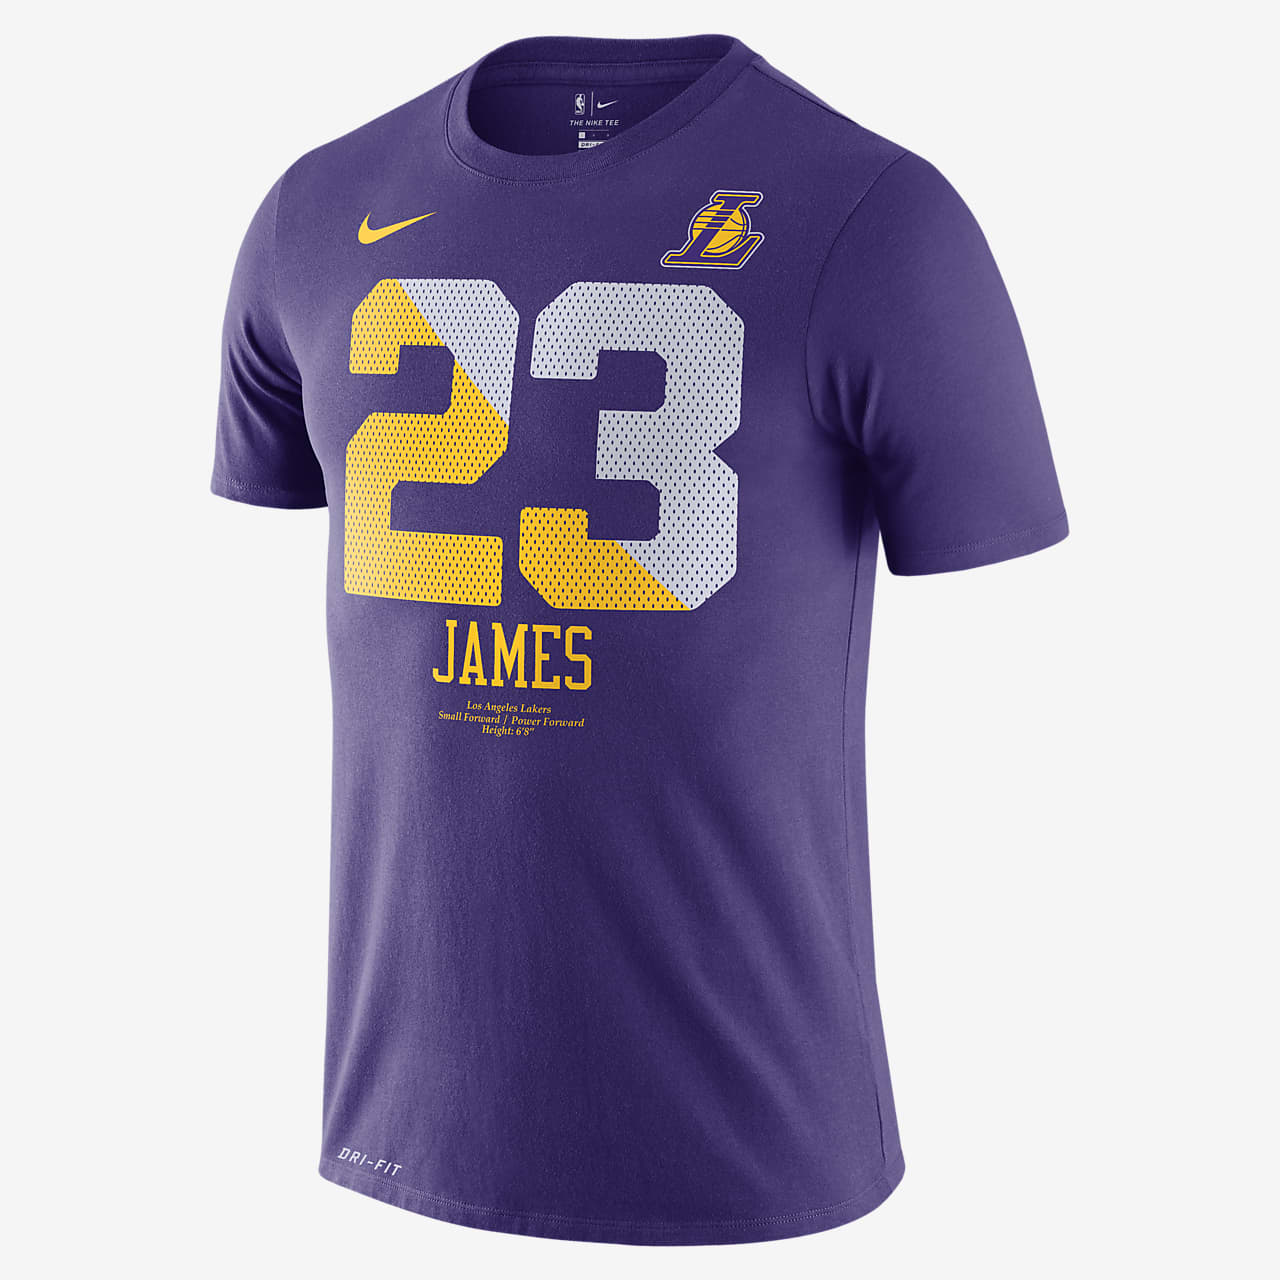 洛杉矶湖人队 (LeBron James) Nike Dri-FIT NBA 男子T恤